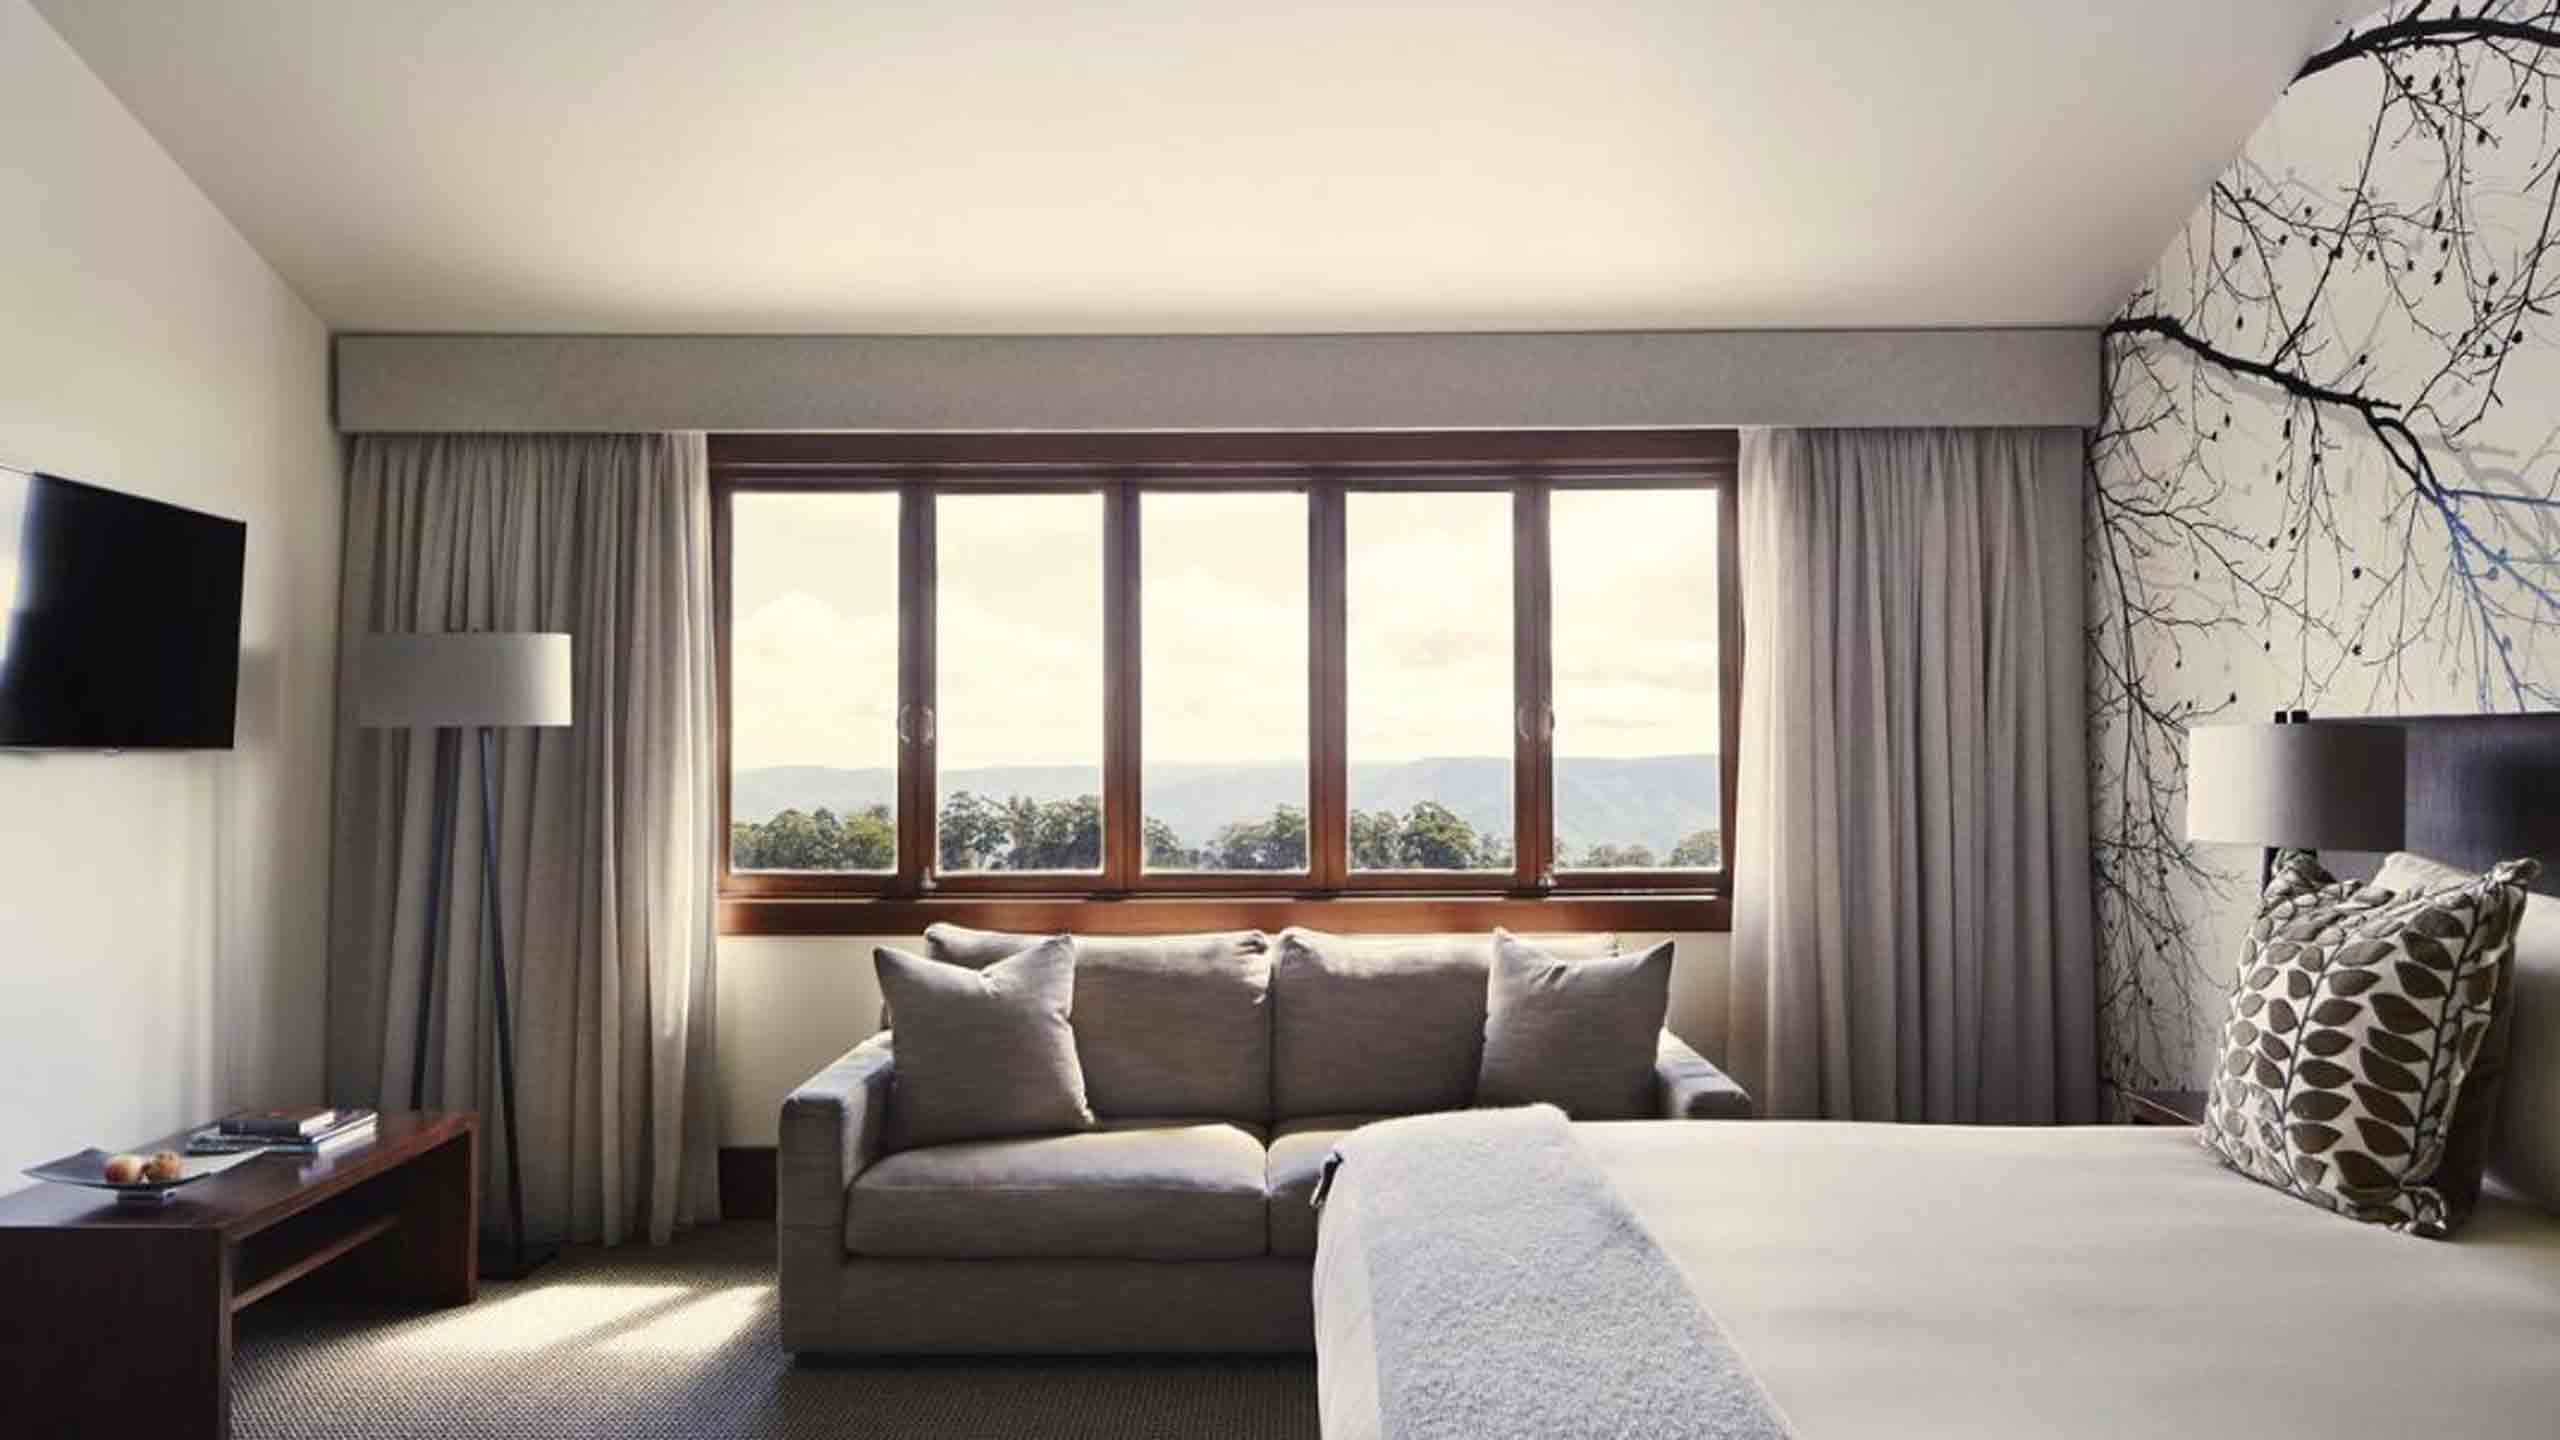 spicers-peak-lodge-scenic-rim-queensland-bedroom-window-view